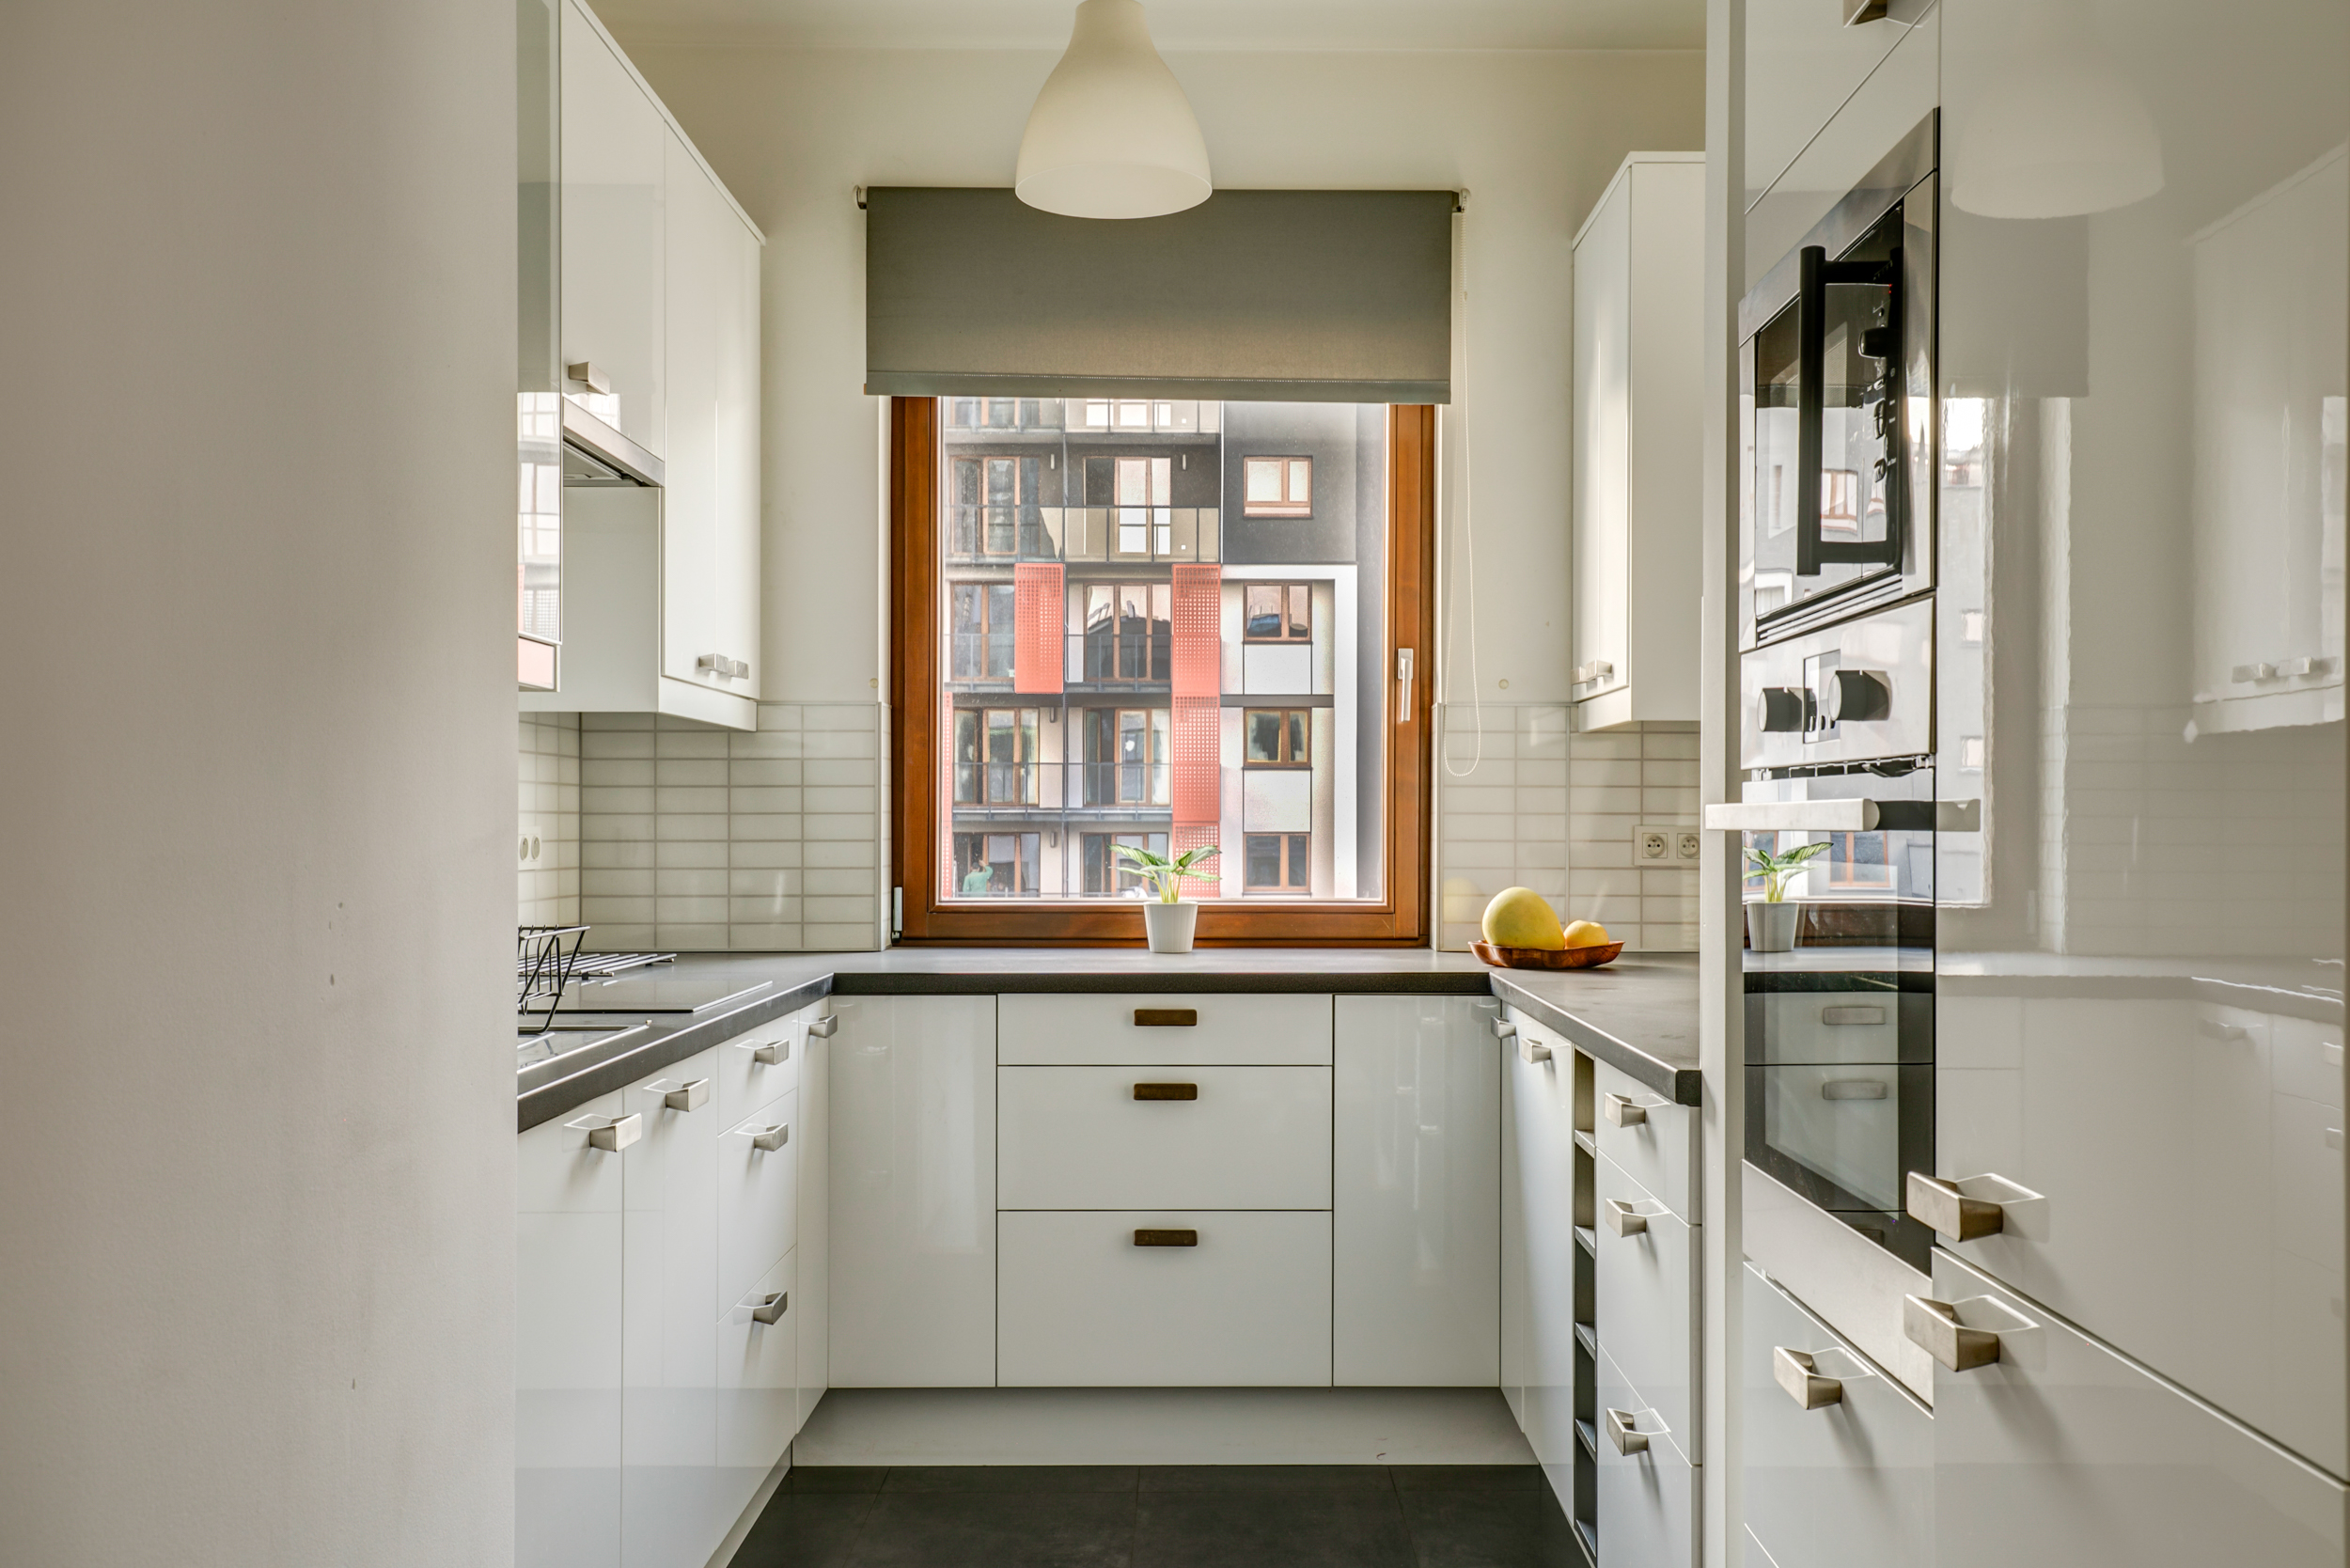 Zdjęcie architektury mieszkania przedstawiające kuchnię